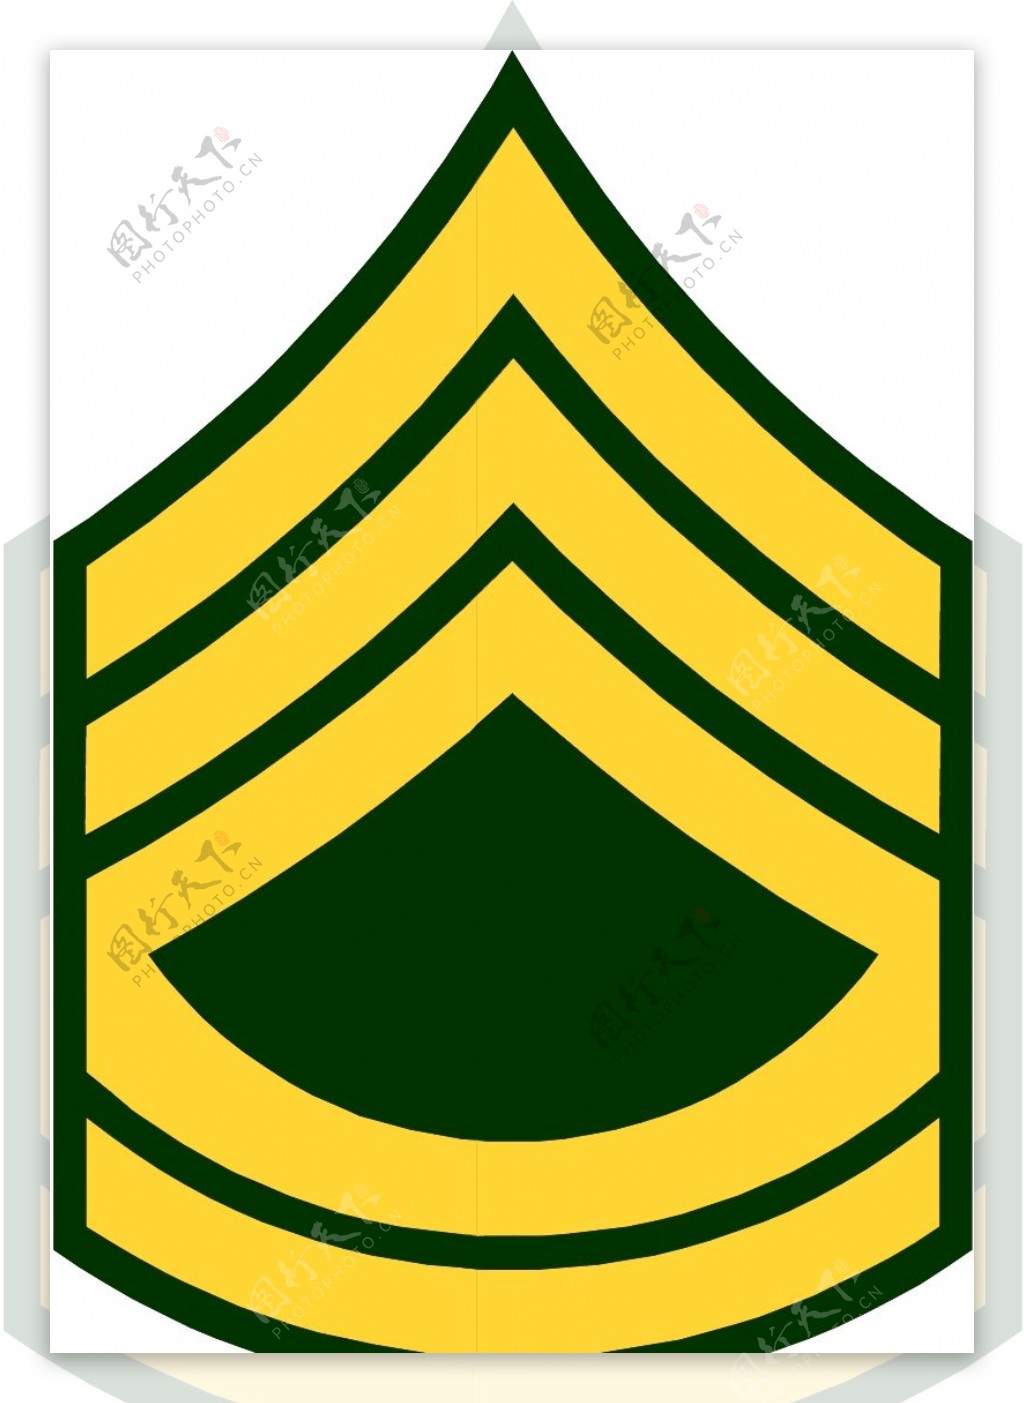 军队徽章0011